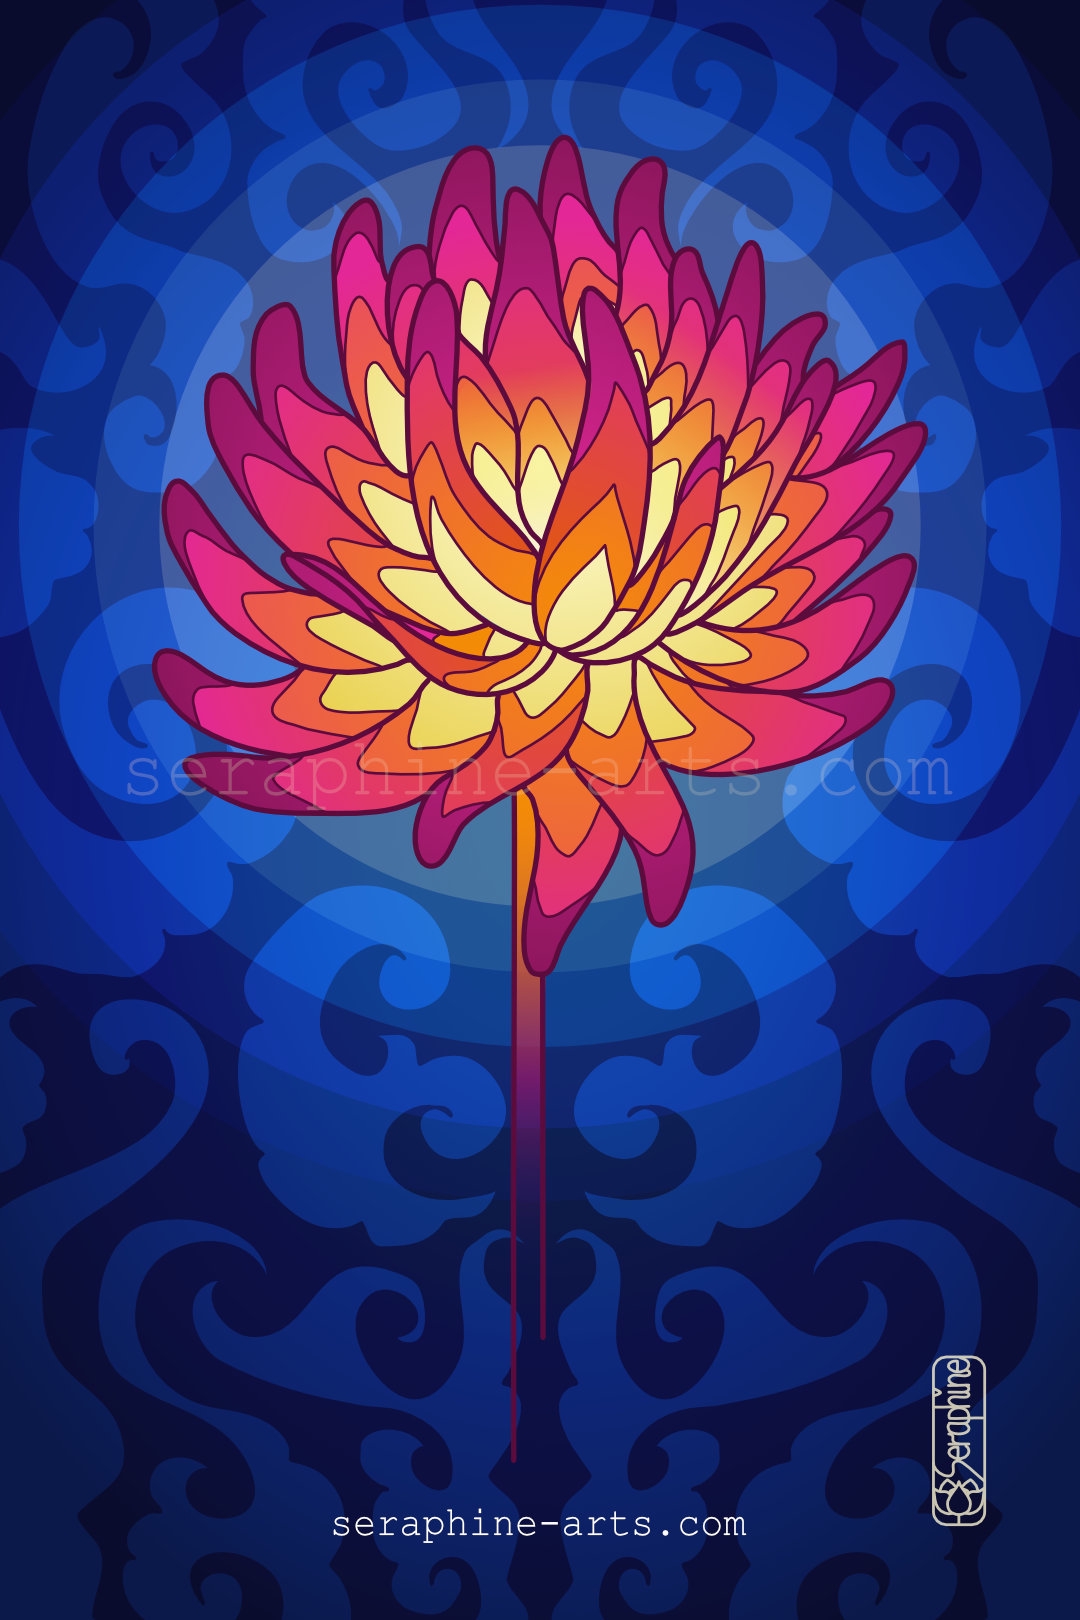 images/chrysanthemum-flower.jpg